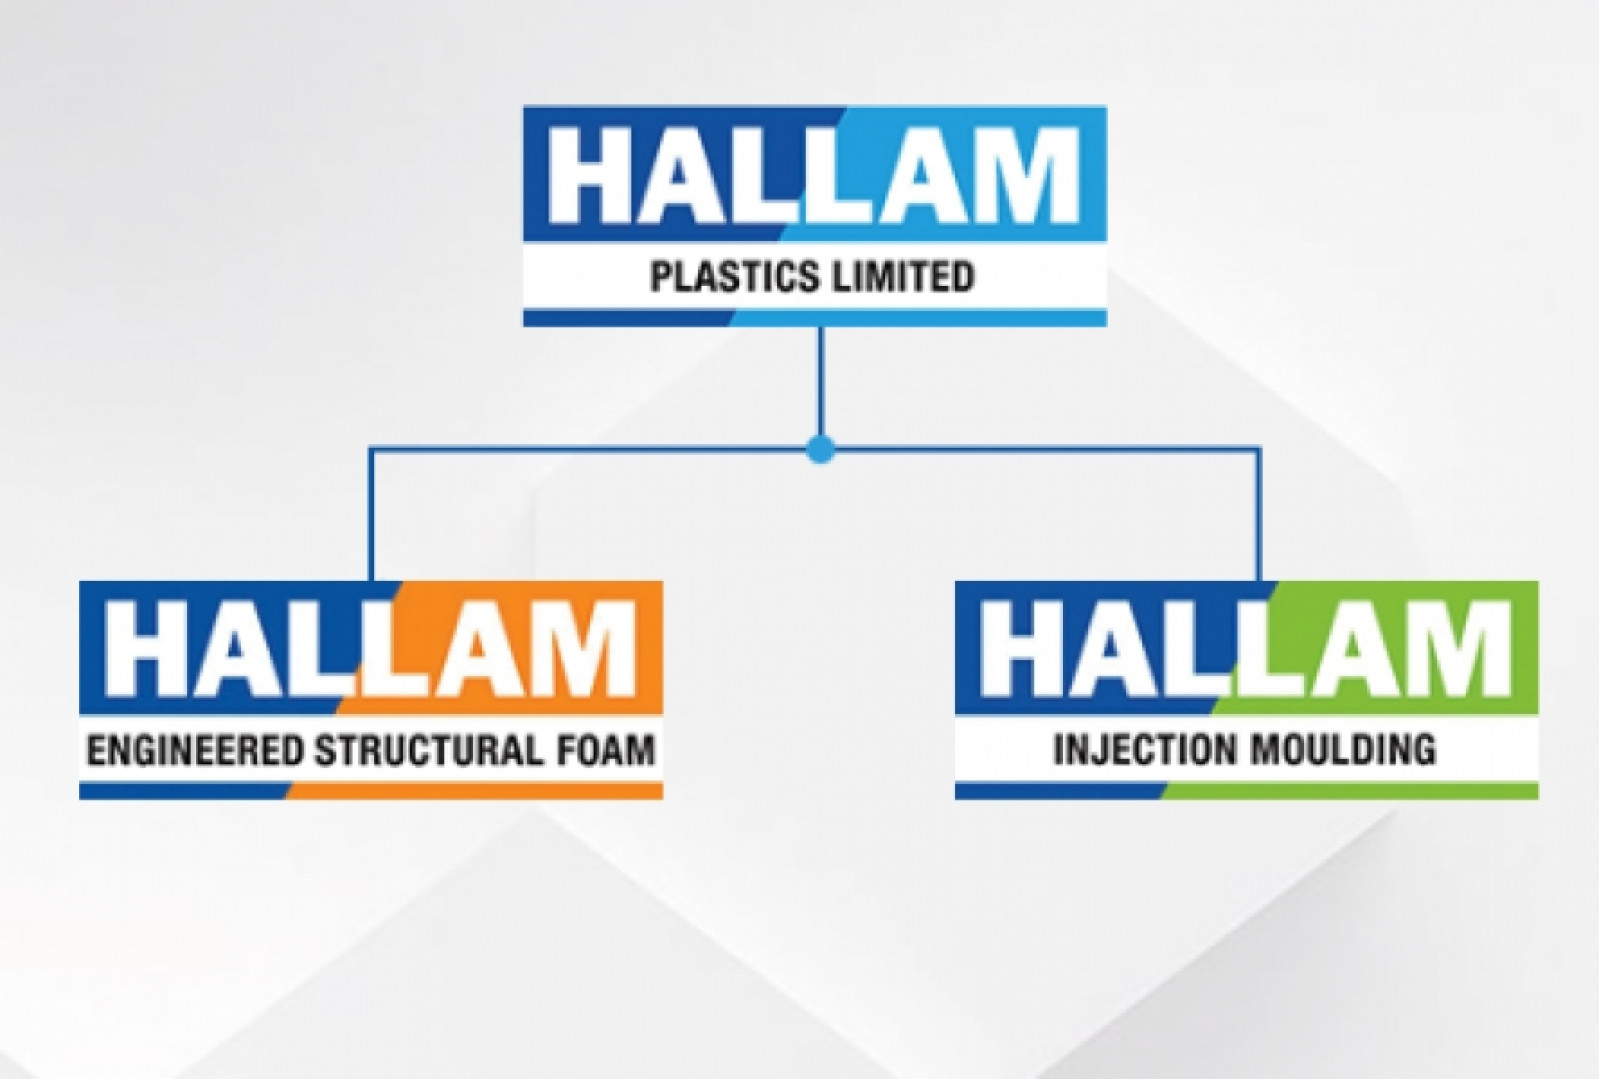 Hallam Plastics Limited joins leading Midlands ind...